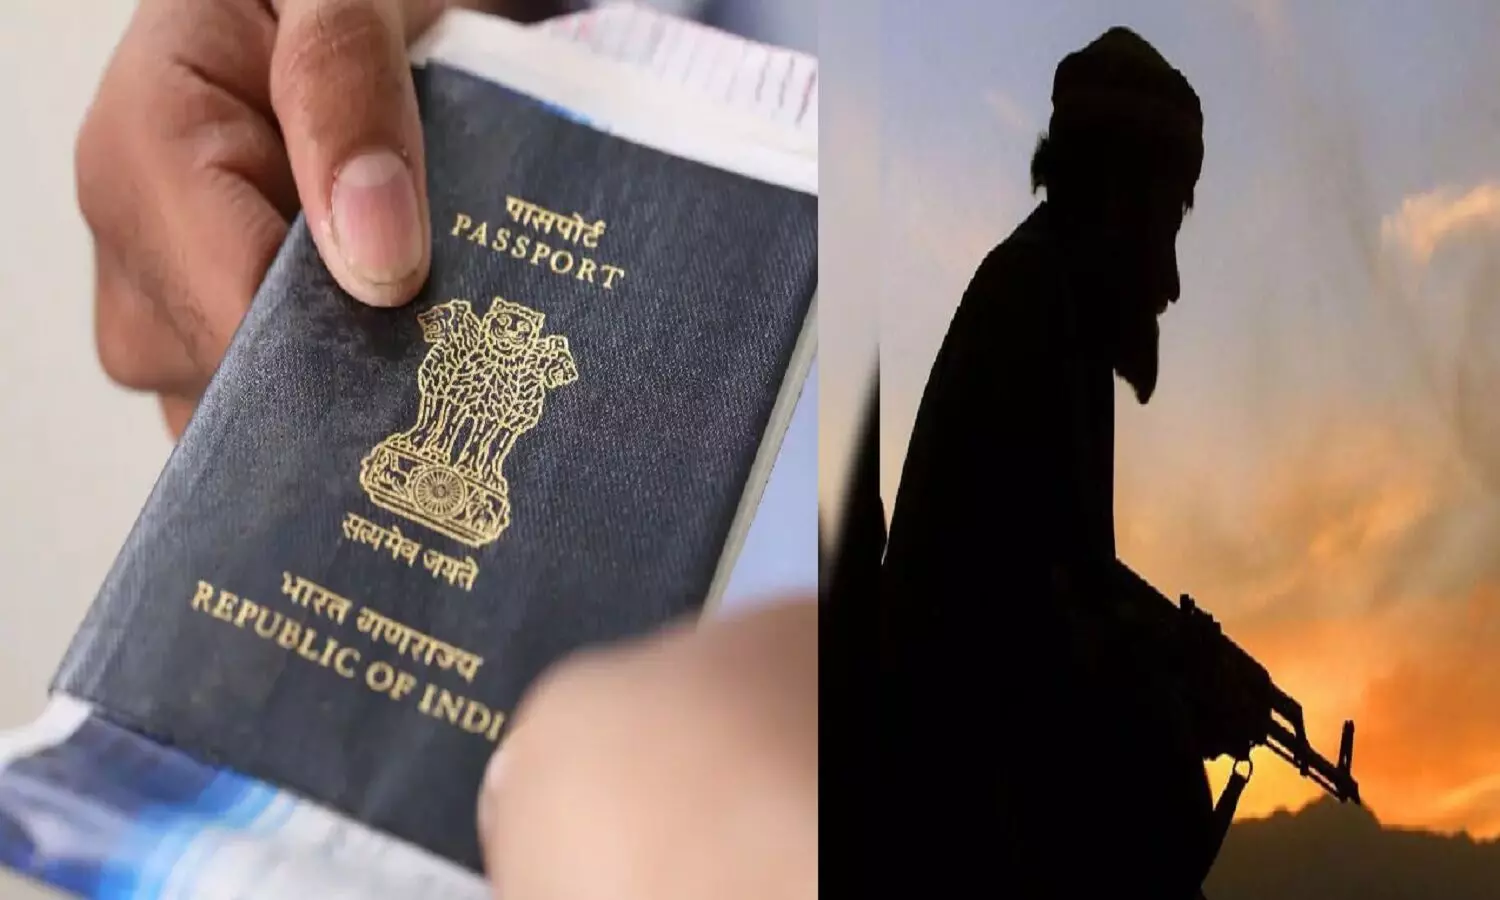 इंडियन पासपोर्ट लेकर भारत में छिपे हैं दो बांग्लादेशी आतंकी! पुलिस उन्हें तलाश रही, कहीं आपके शहर में तो..